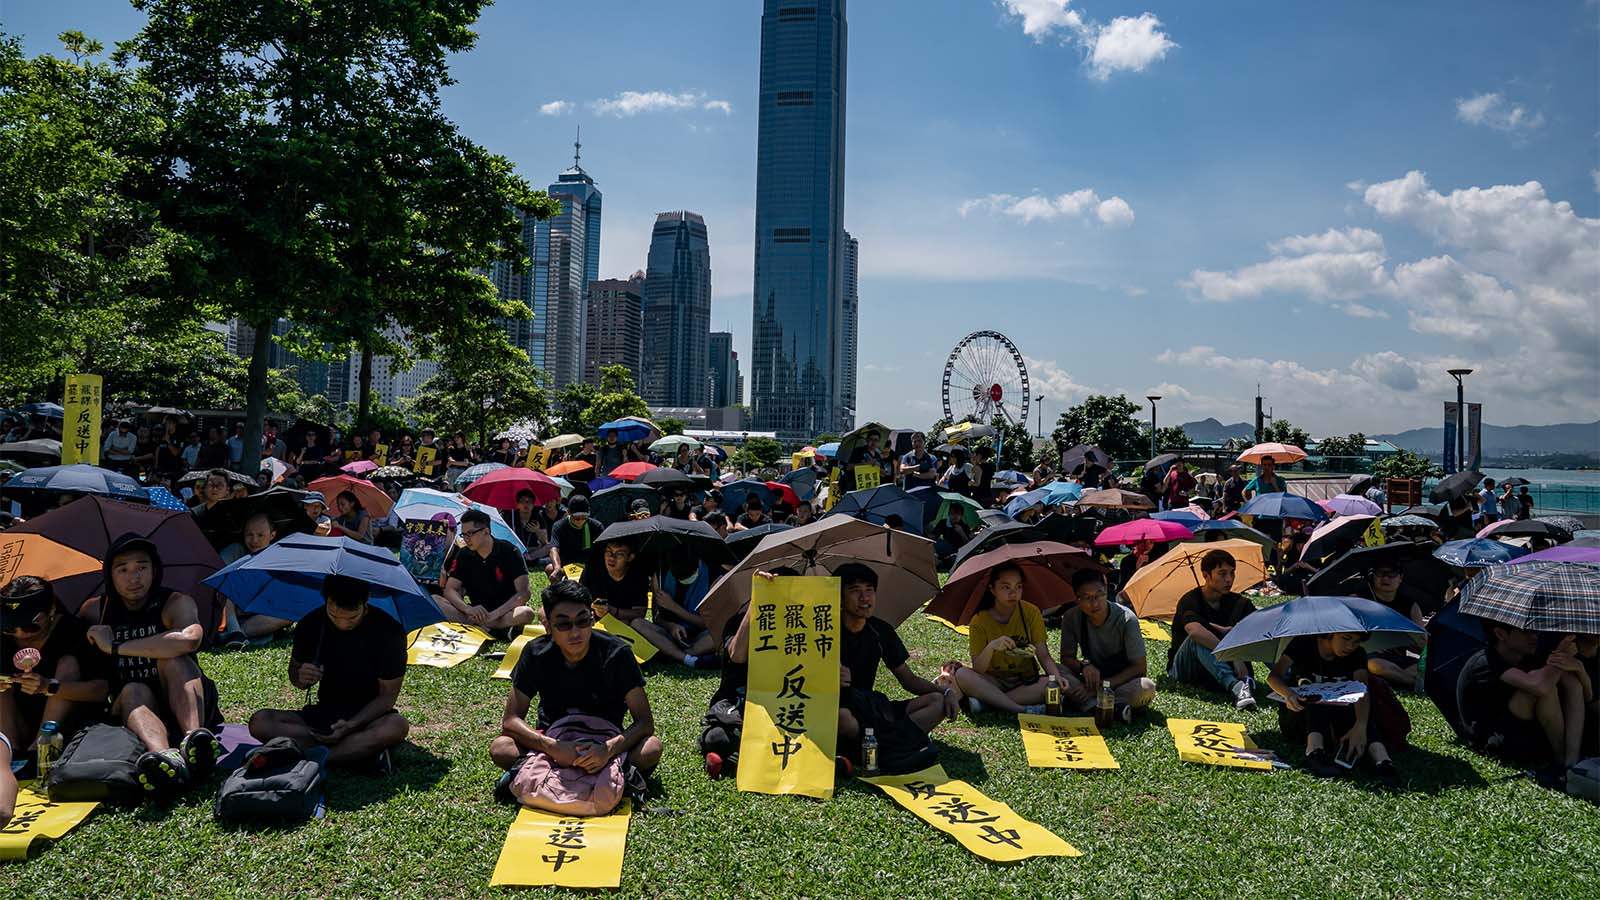 מפגינים מחזיקים שלטים ומטריות במסגרת גל המחאה בהונג קונג. 5 באוגוסט 2019 (צילום: by Anthony Kwan/Getty Images)